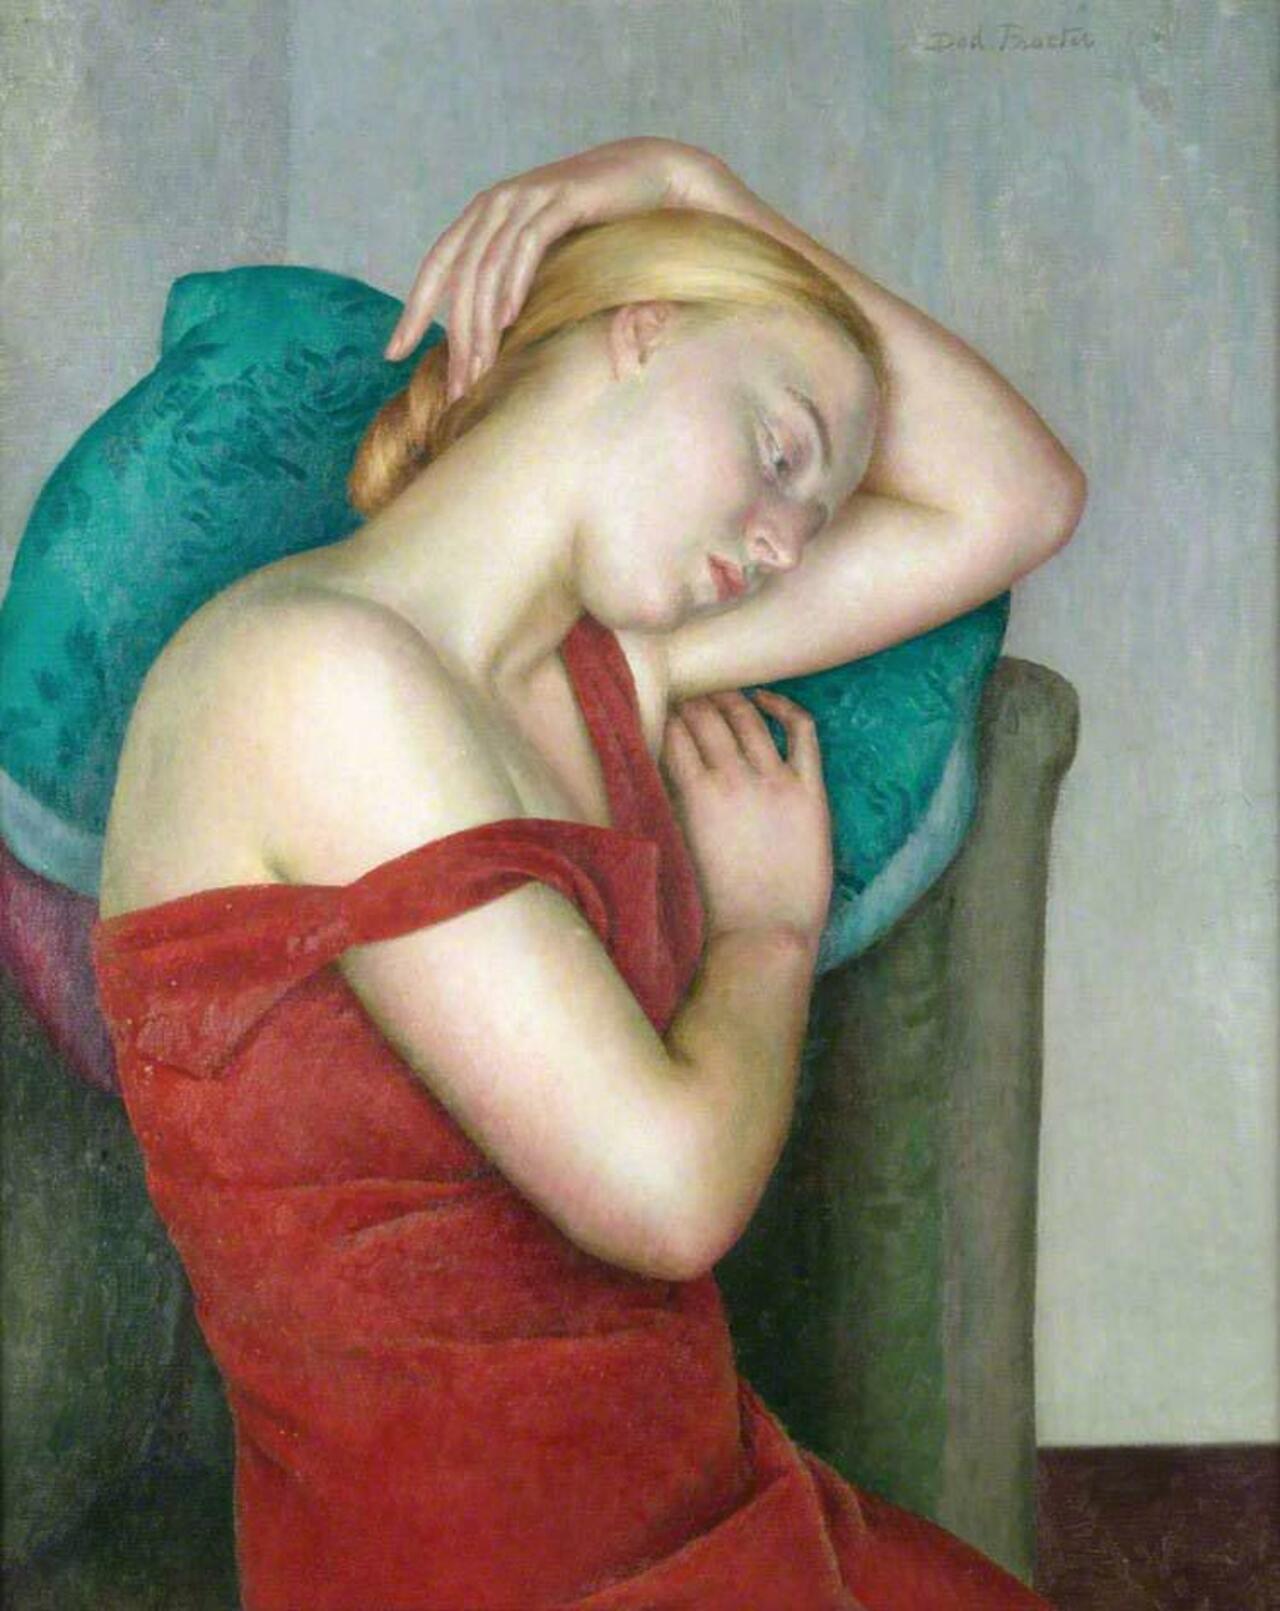 “@geminicat7: 'The Golden Girl'
Dod Procter, c.1930 #art 

http://www.bbc.co.uk/arts/yourpaintings/paintings/the-golden-girl-230502 http://t.co/OXj3npnlPI”